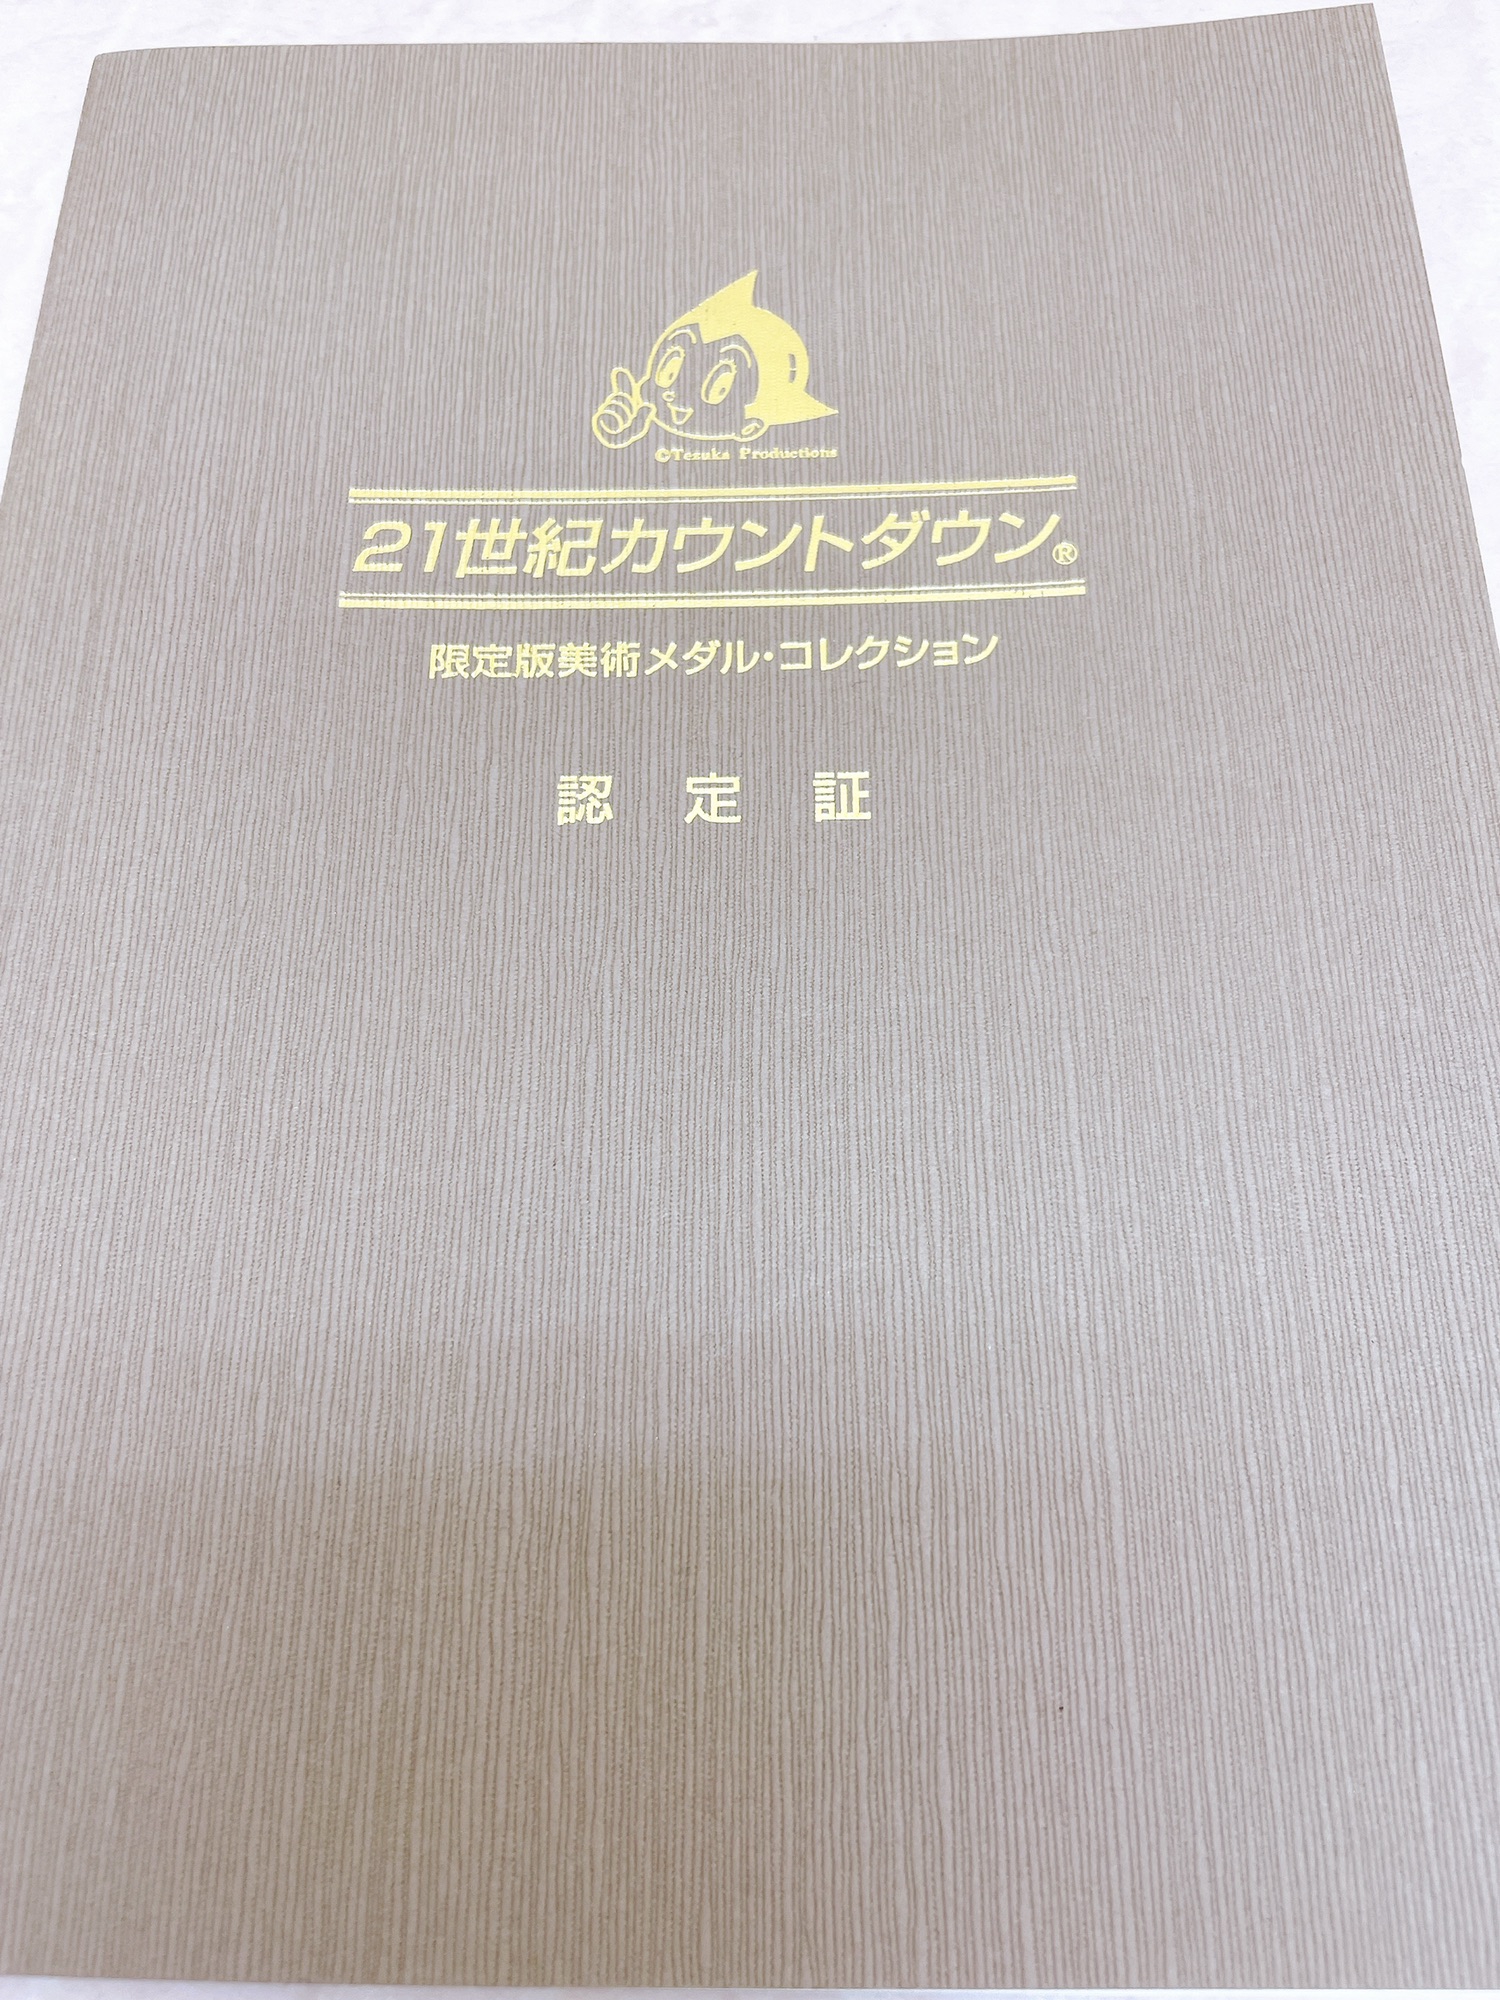 21世紀カウントダウン 純金製限定版美術メダルコレクション 手塚 